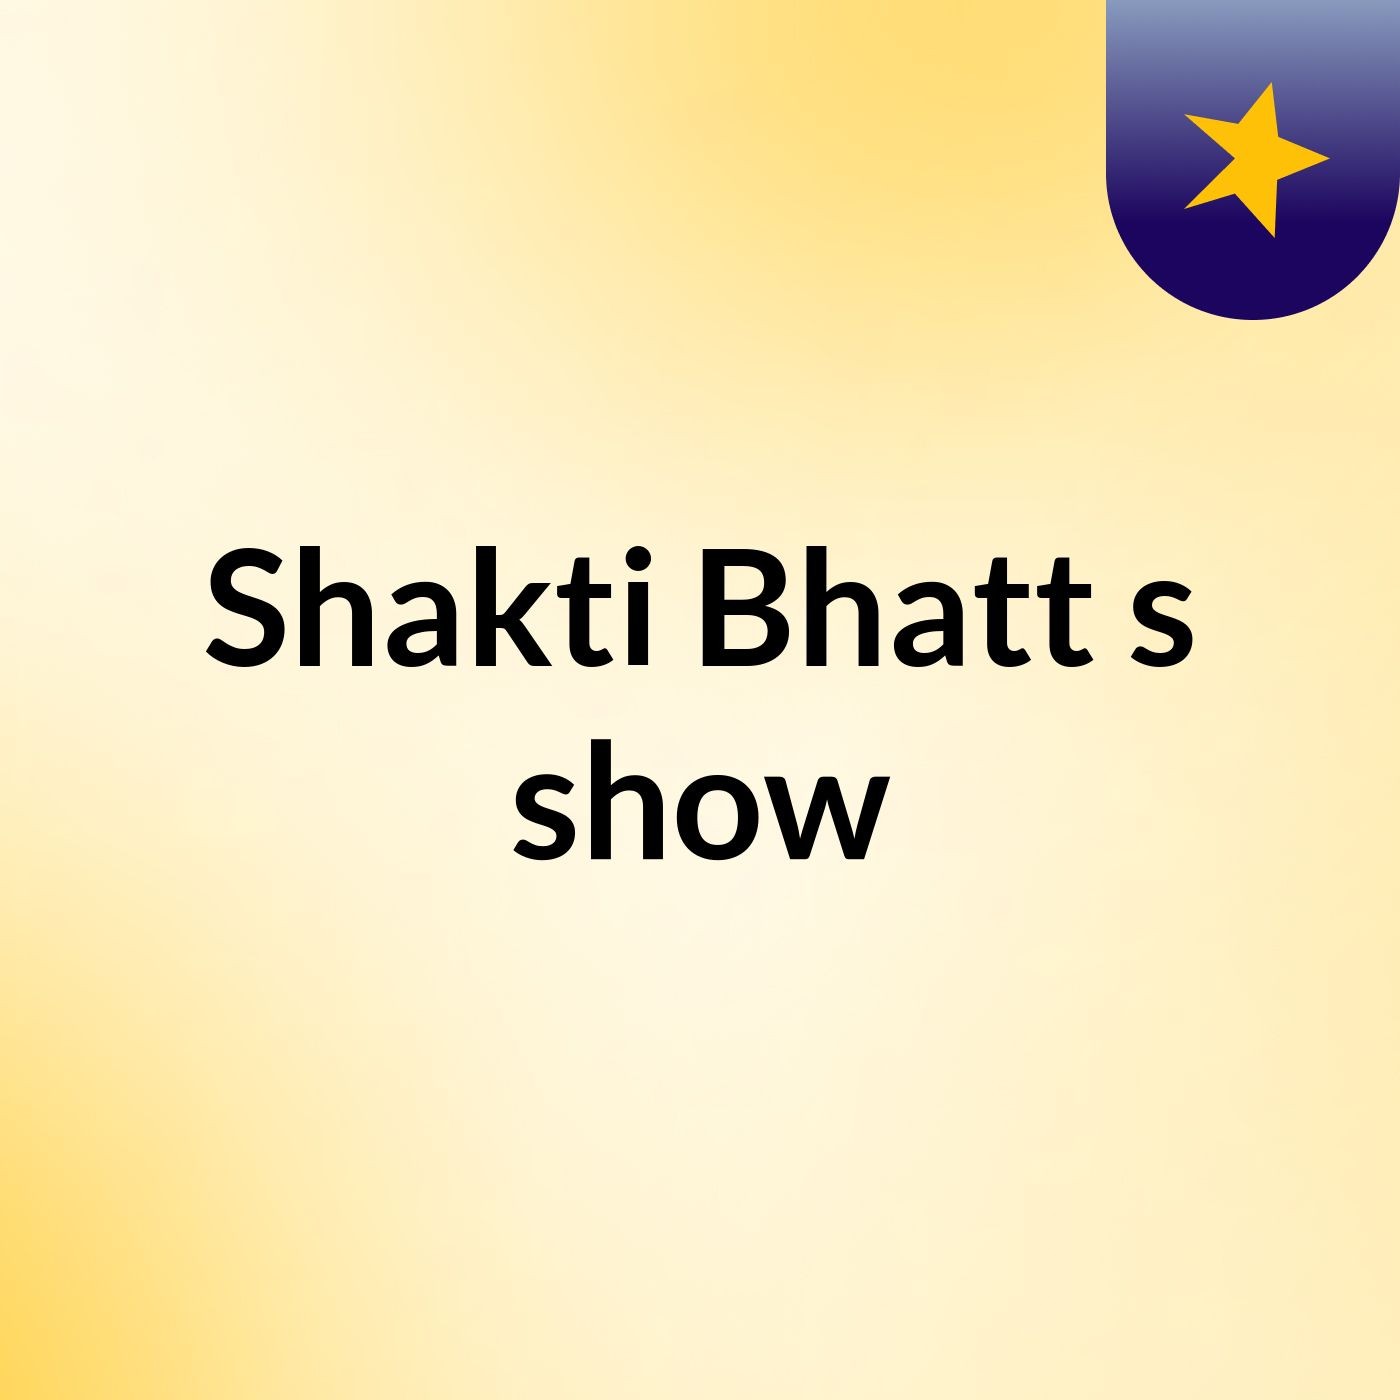 Shakti Bhatt's show